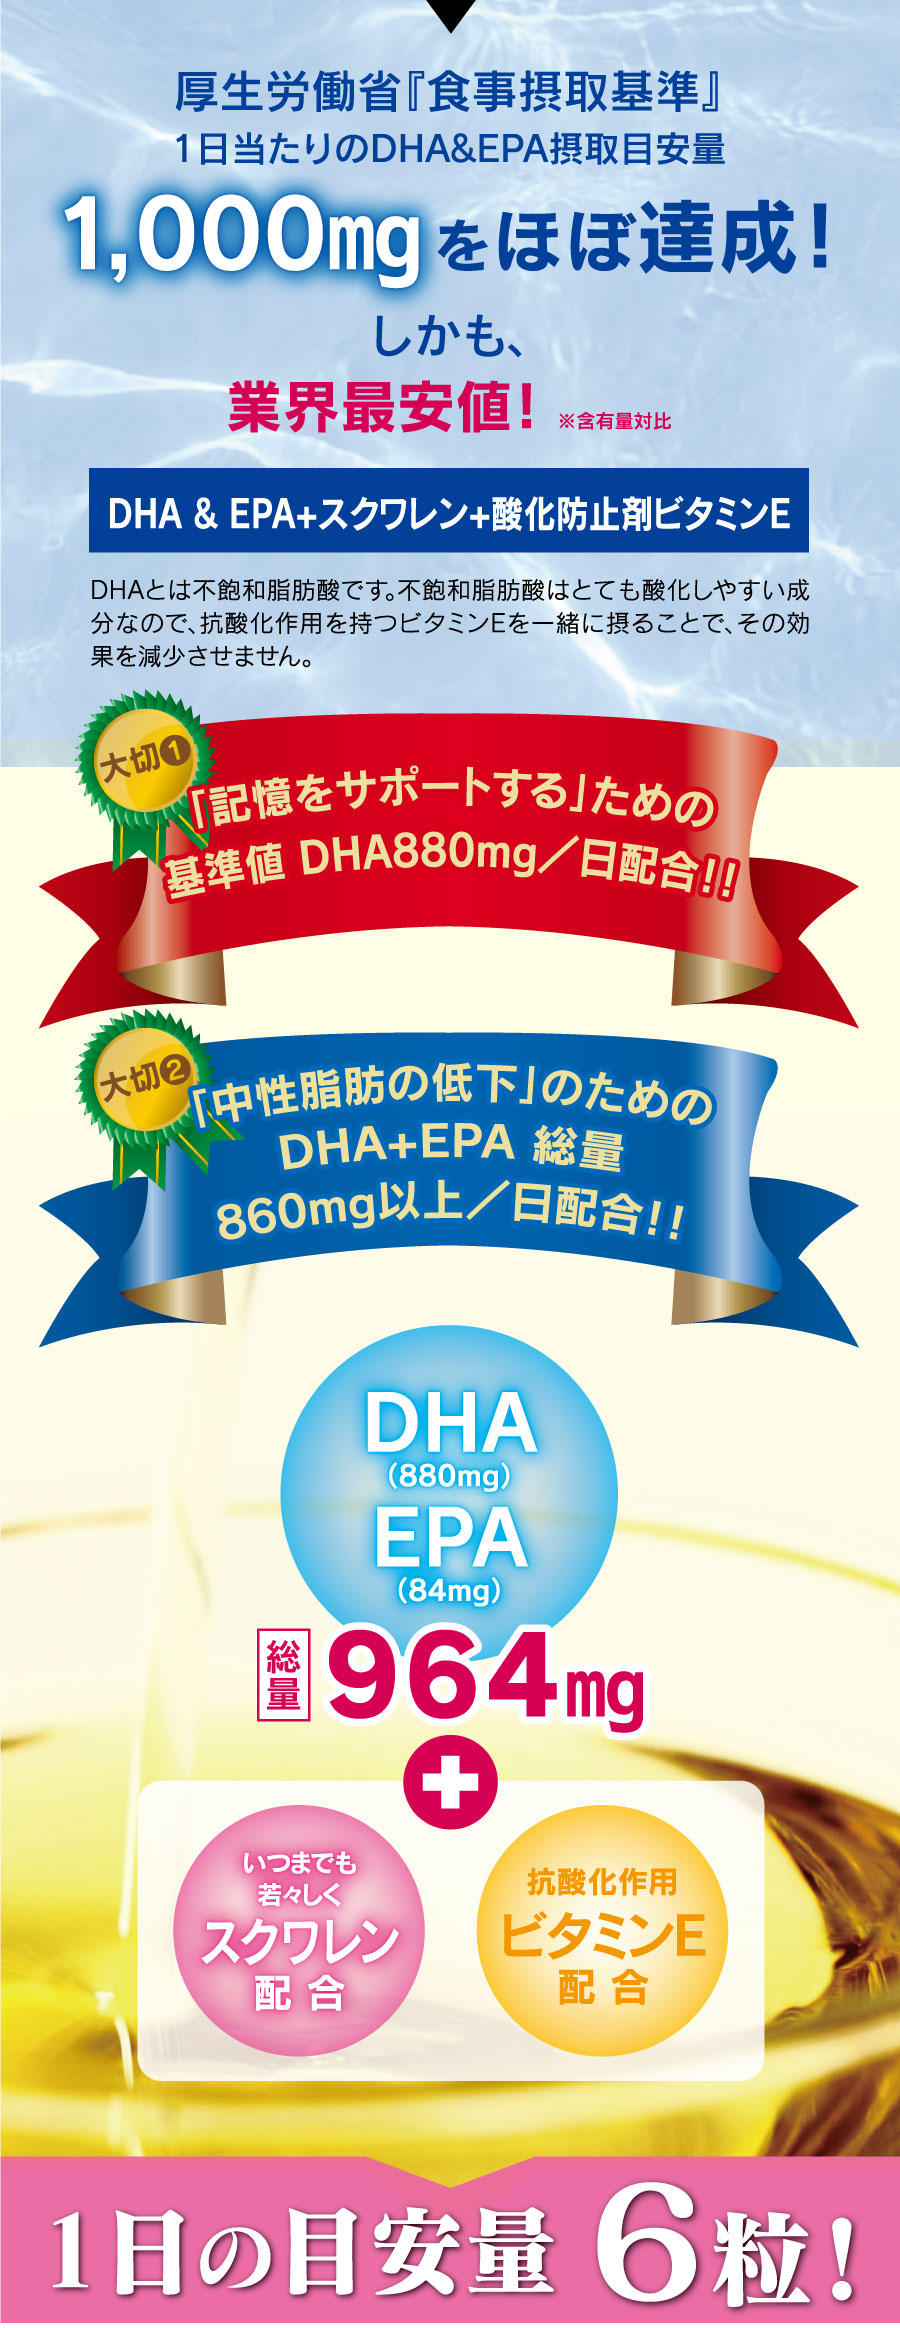 厚生労働省『食事摂取基準』1日当たりのDHA&EPA摂取目安量1,000mgをほぼ達成！